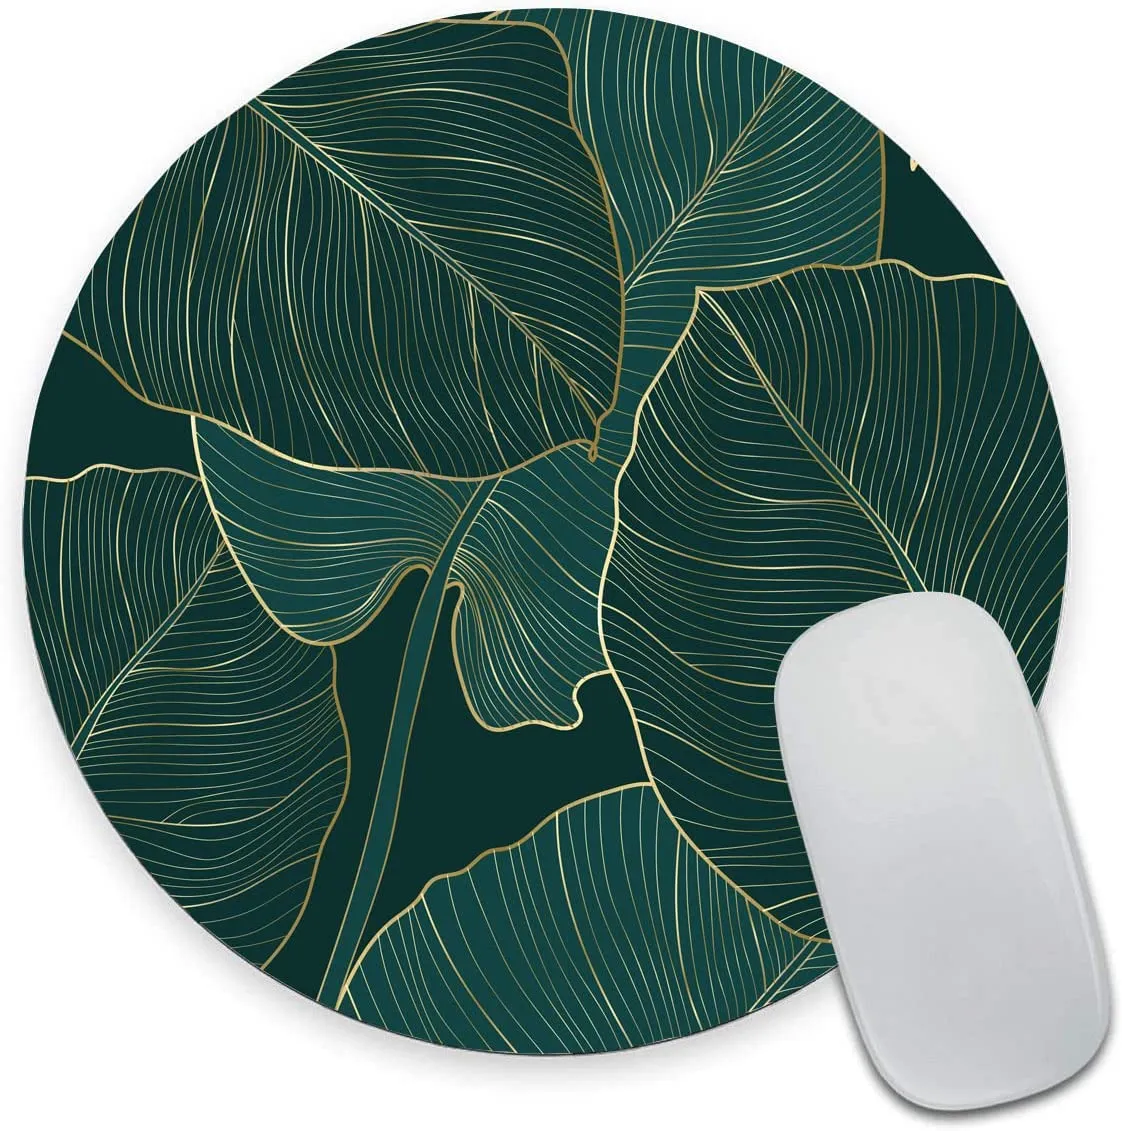 緑の熱帯の葉の丸いコンピュータマウスマットデザイン非滑りゴムベース小さなマウスパッド防水オフィスマウスパッド